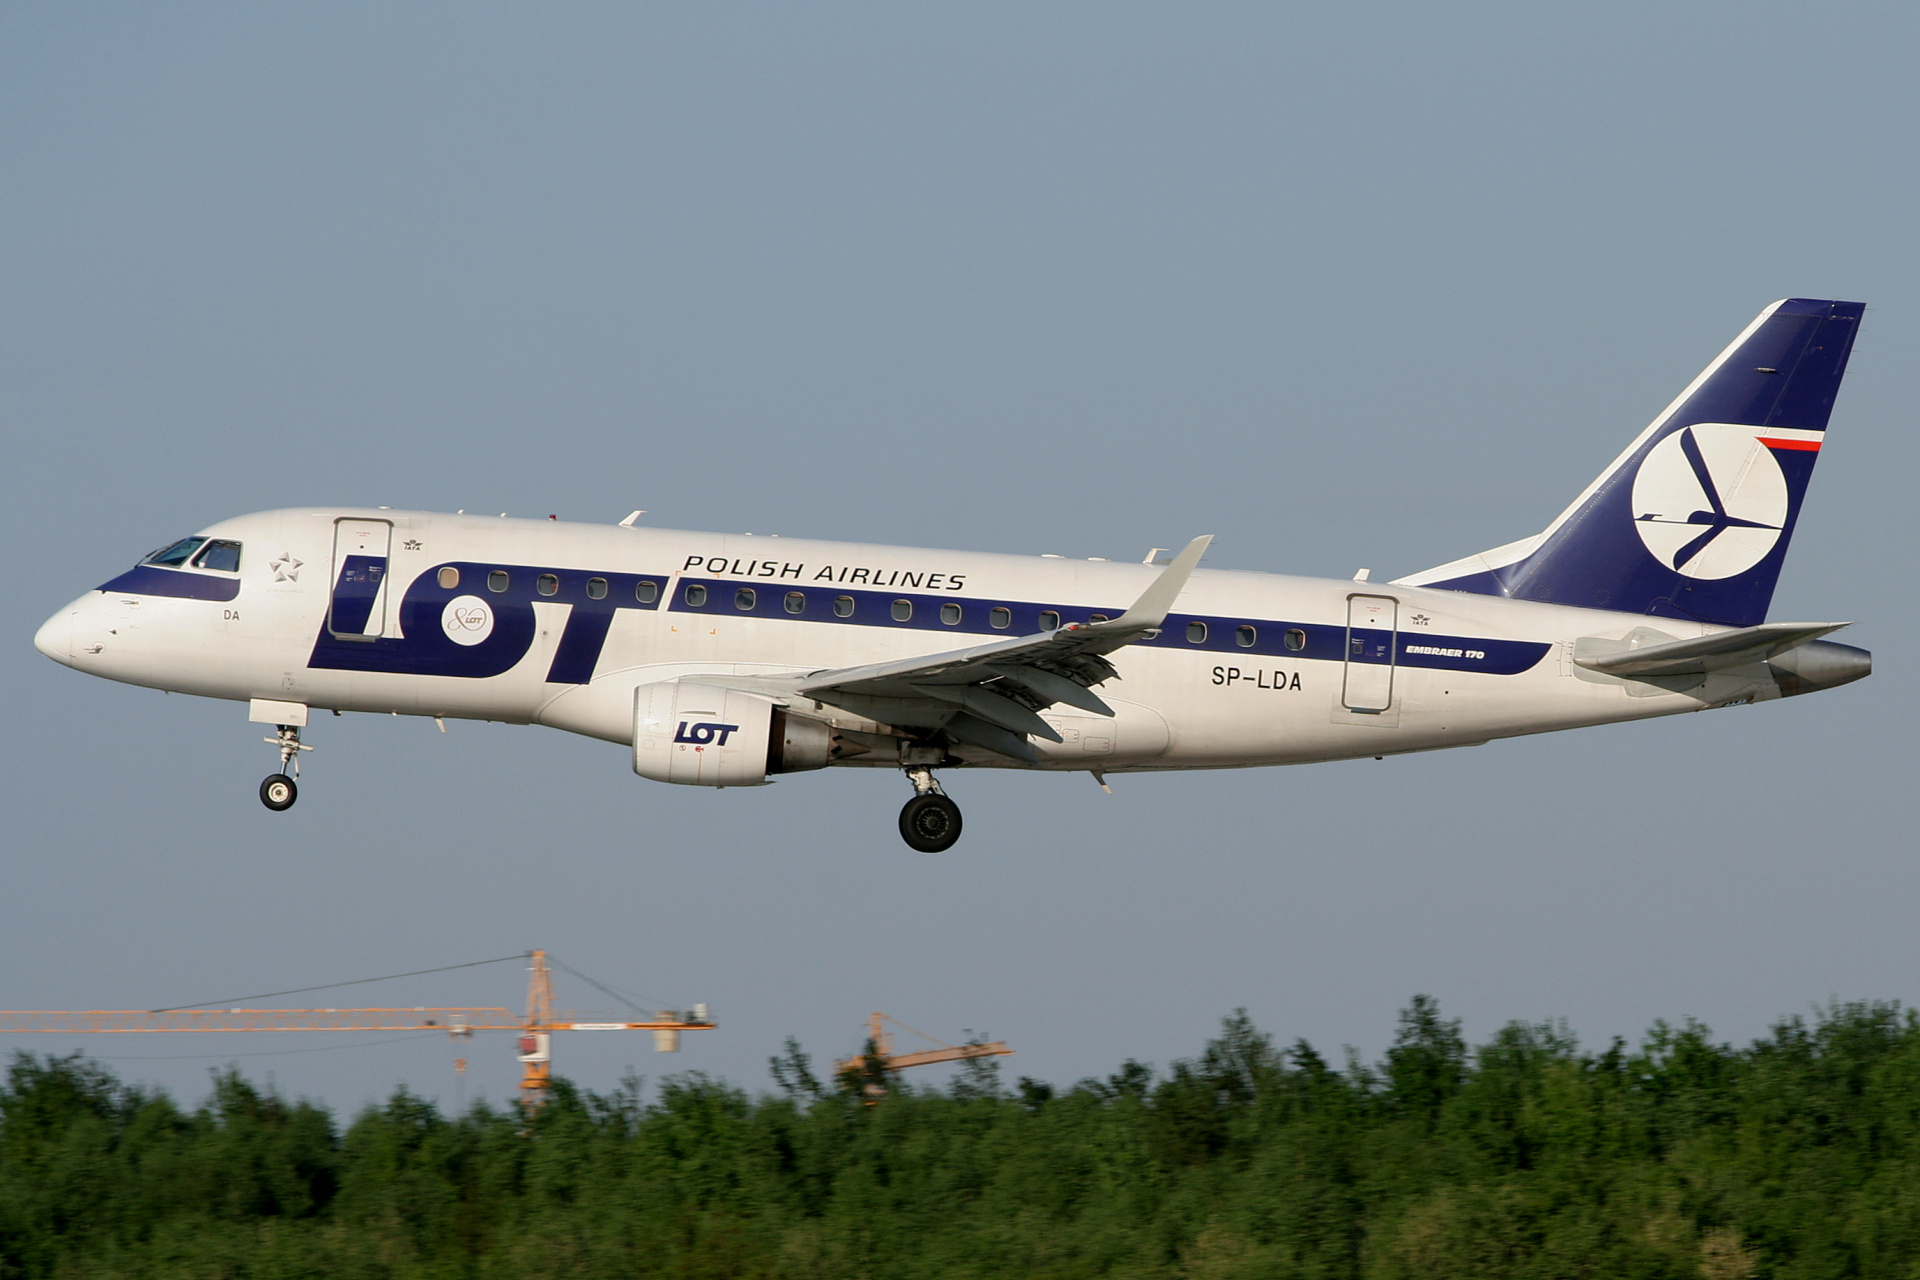 SP-LDA (naklejka 80-tej rocznicy) (Samoloty » Spotting na EPWA » Embraer E170 » Polskie Linie Lotnicze LOT)